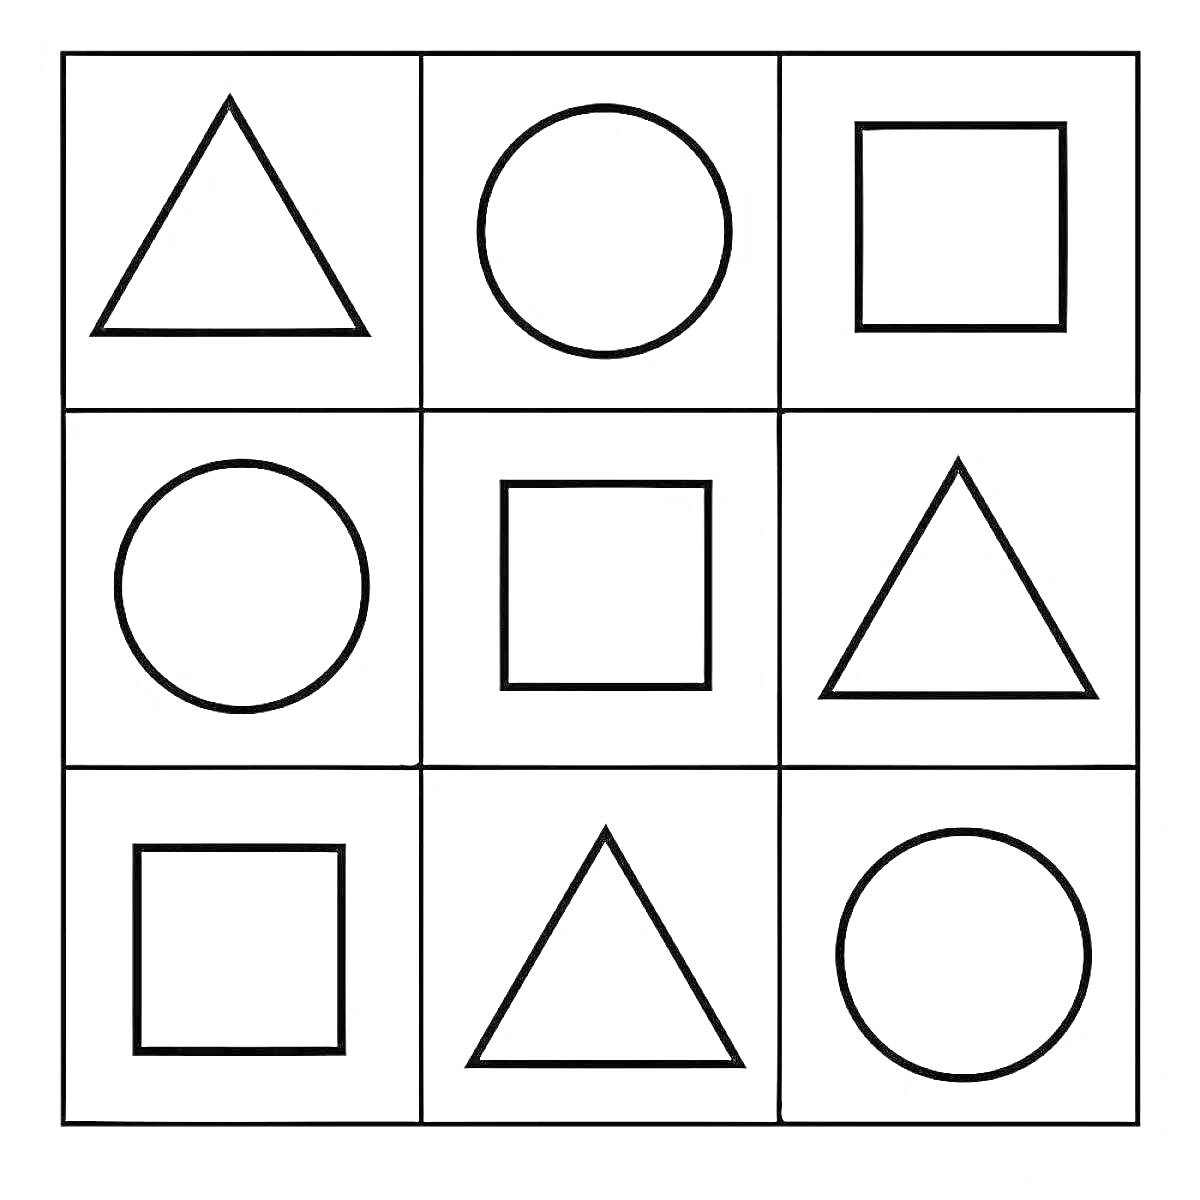 Раскраска Треугольники, круги и квадраты на сетке из девяти ячеек